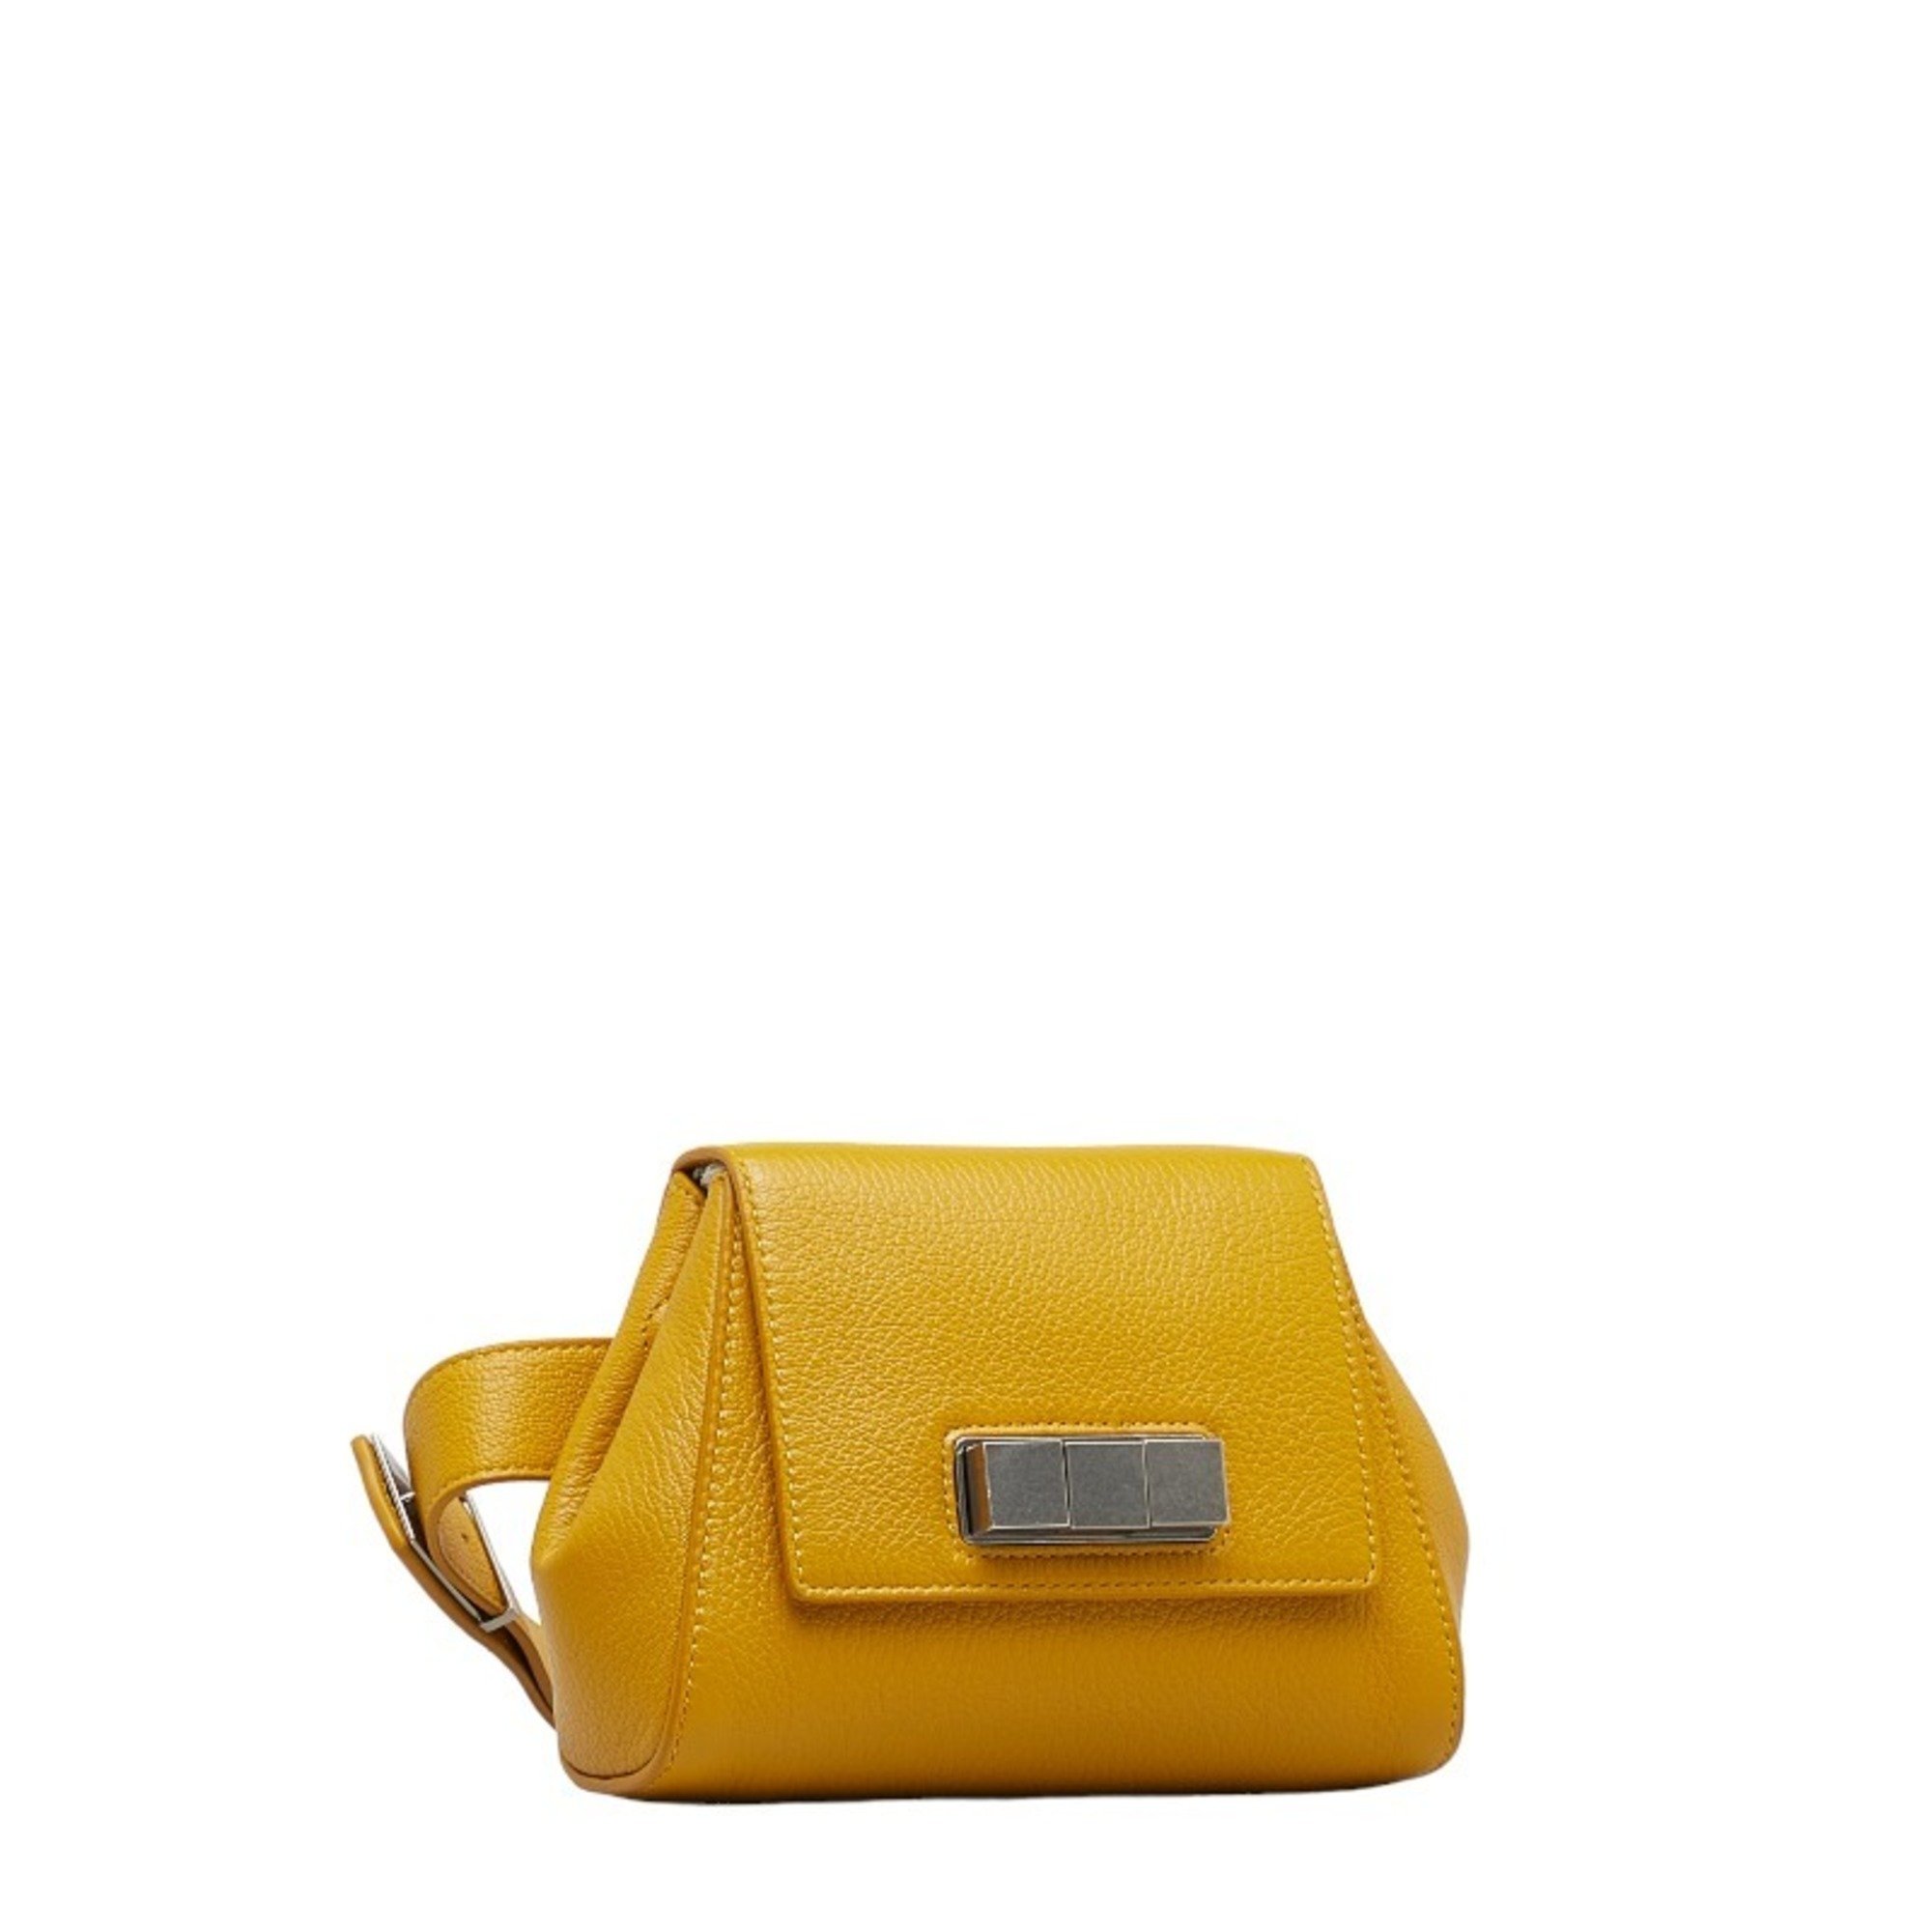 Bottega Veneta Cube Lock Hardware Body Bag Waist 631117 Mustard Yellow Leather Women's BOTTEGAVENETA